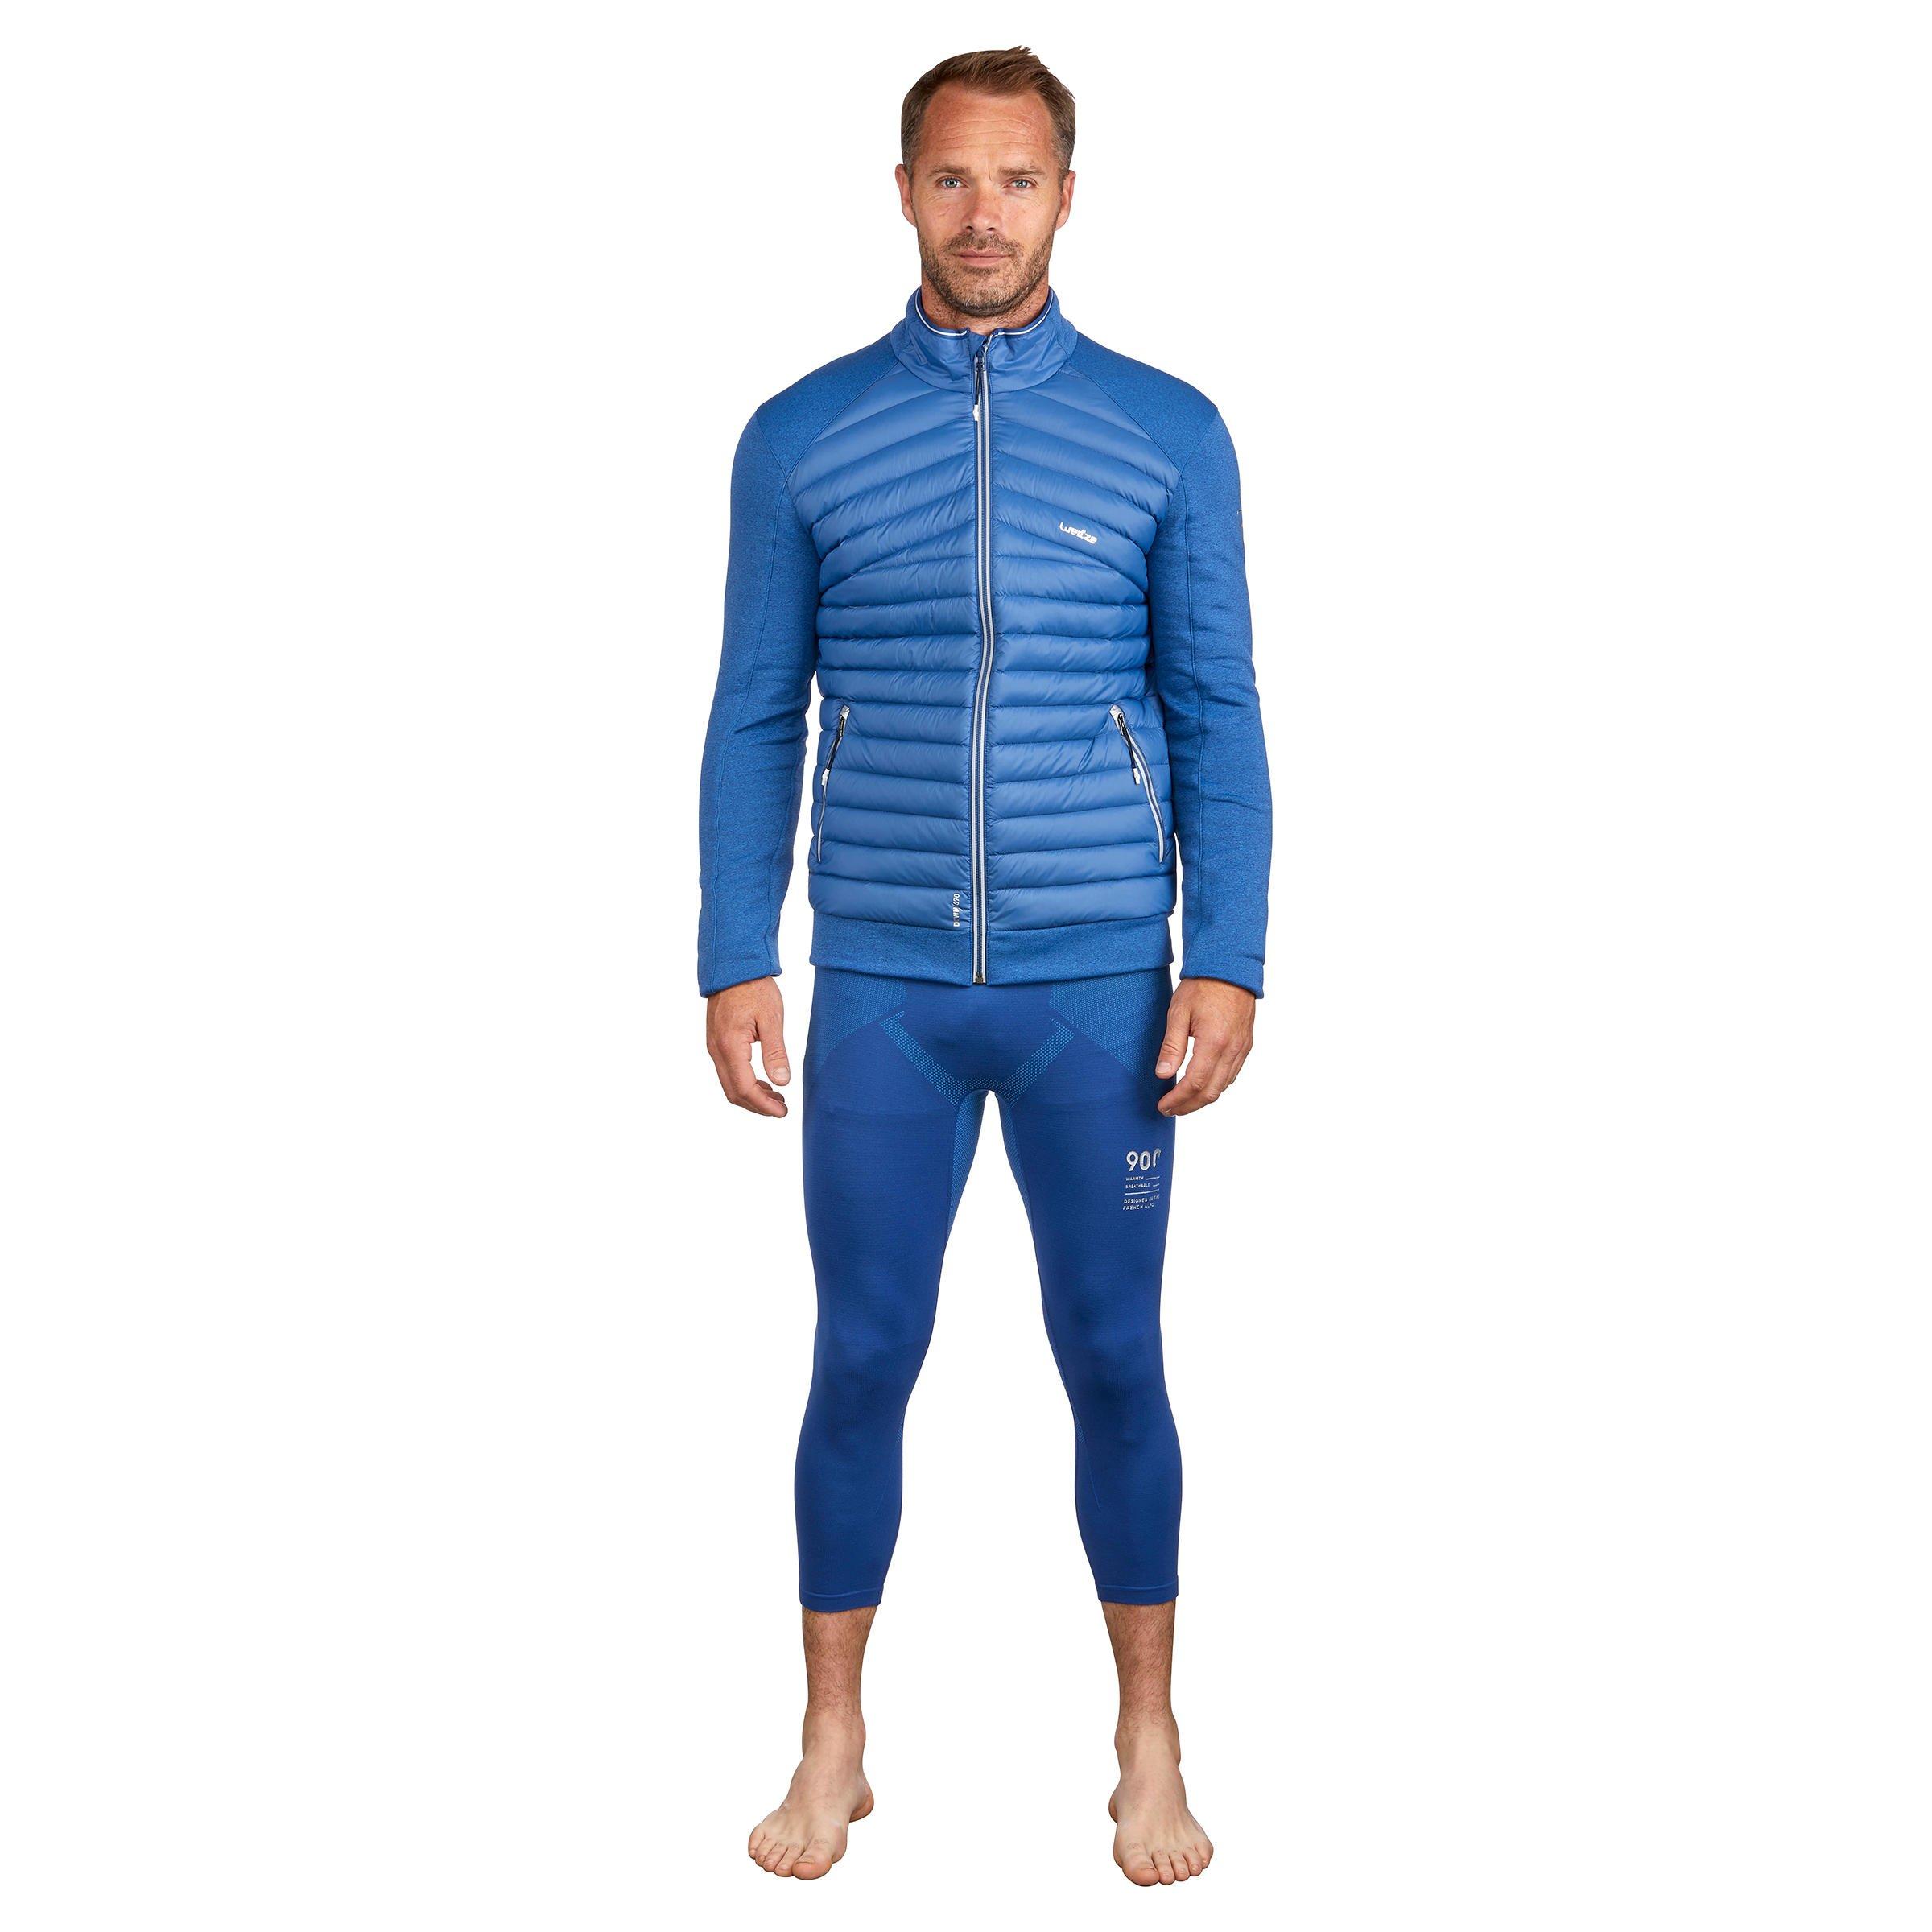 Sous-Vêtements Thermique Homme  Wedze Sous-vêtement de ski homme 900 bas  bleu marine Bleu Cosmos / Noir — Dufur